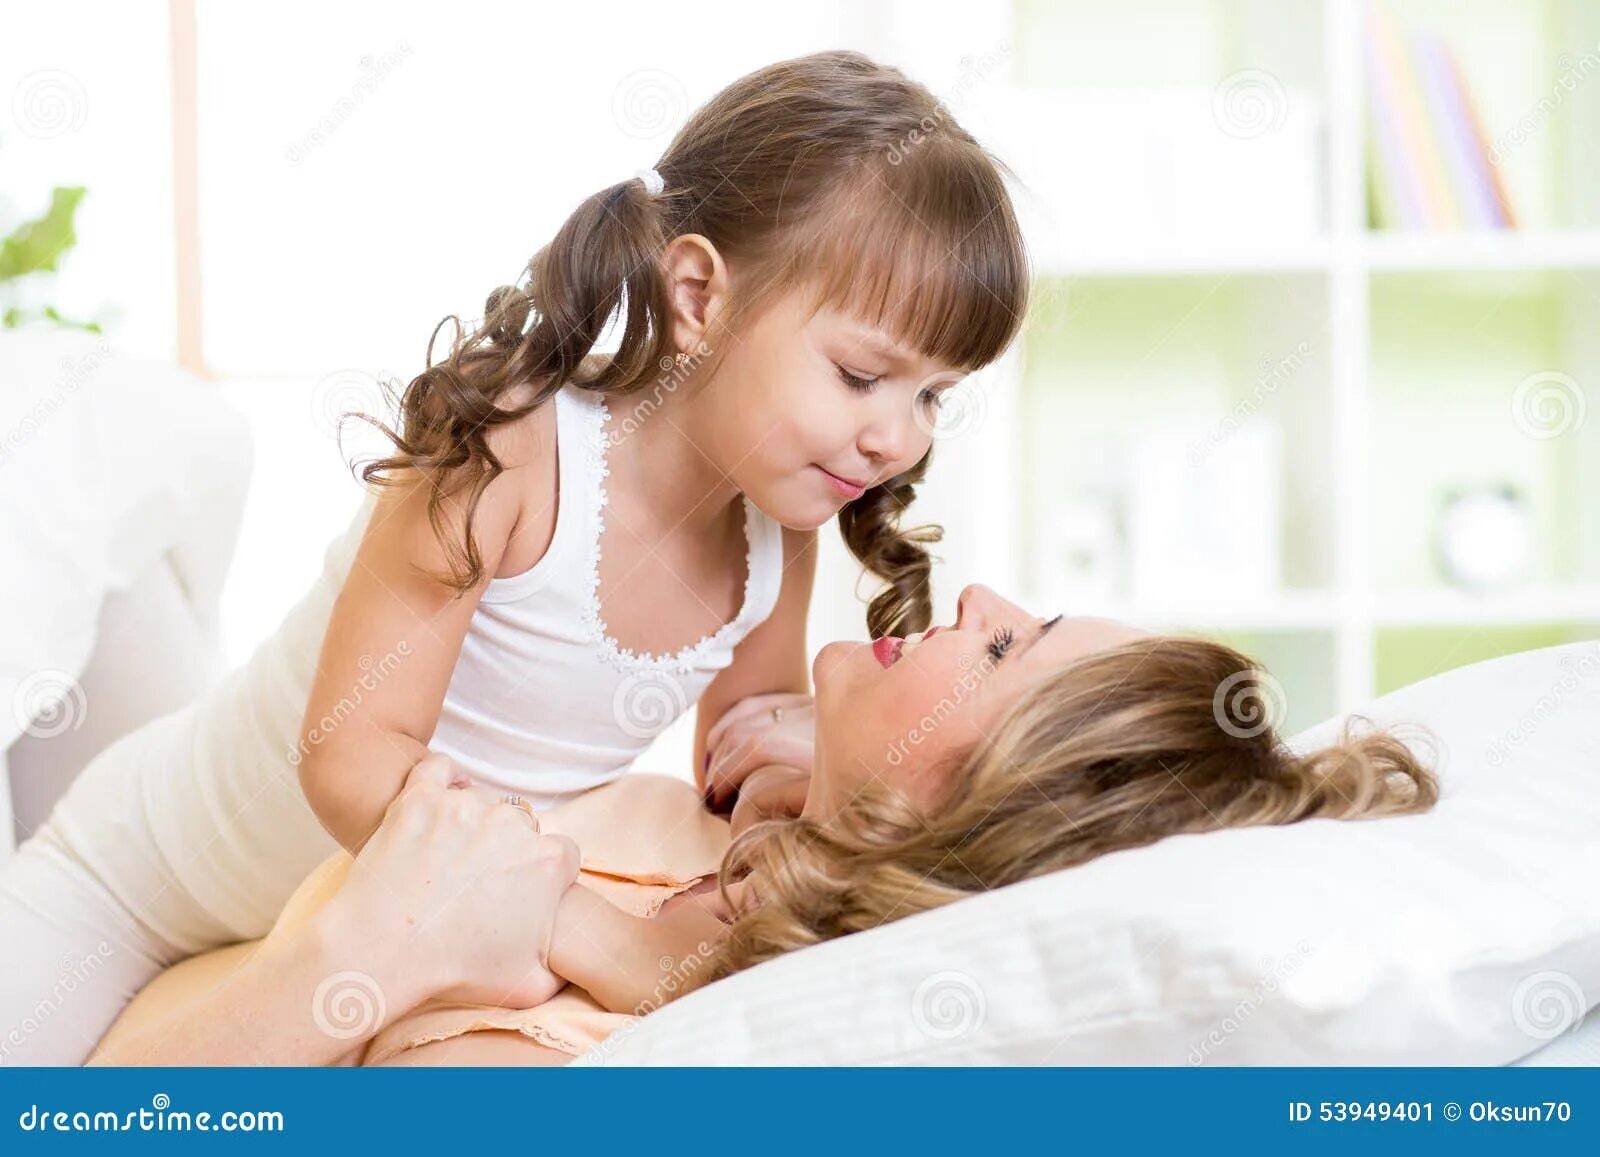 Отец заставляет лизать. Возбужденные мать и дочь. Мама облизывает ребенка. Мама целует дочку в кровати. Мама с дочкой Облизываются.